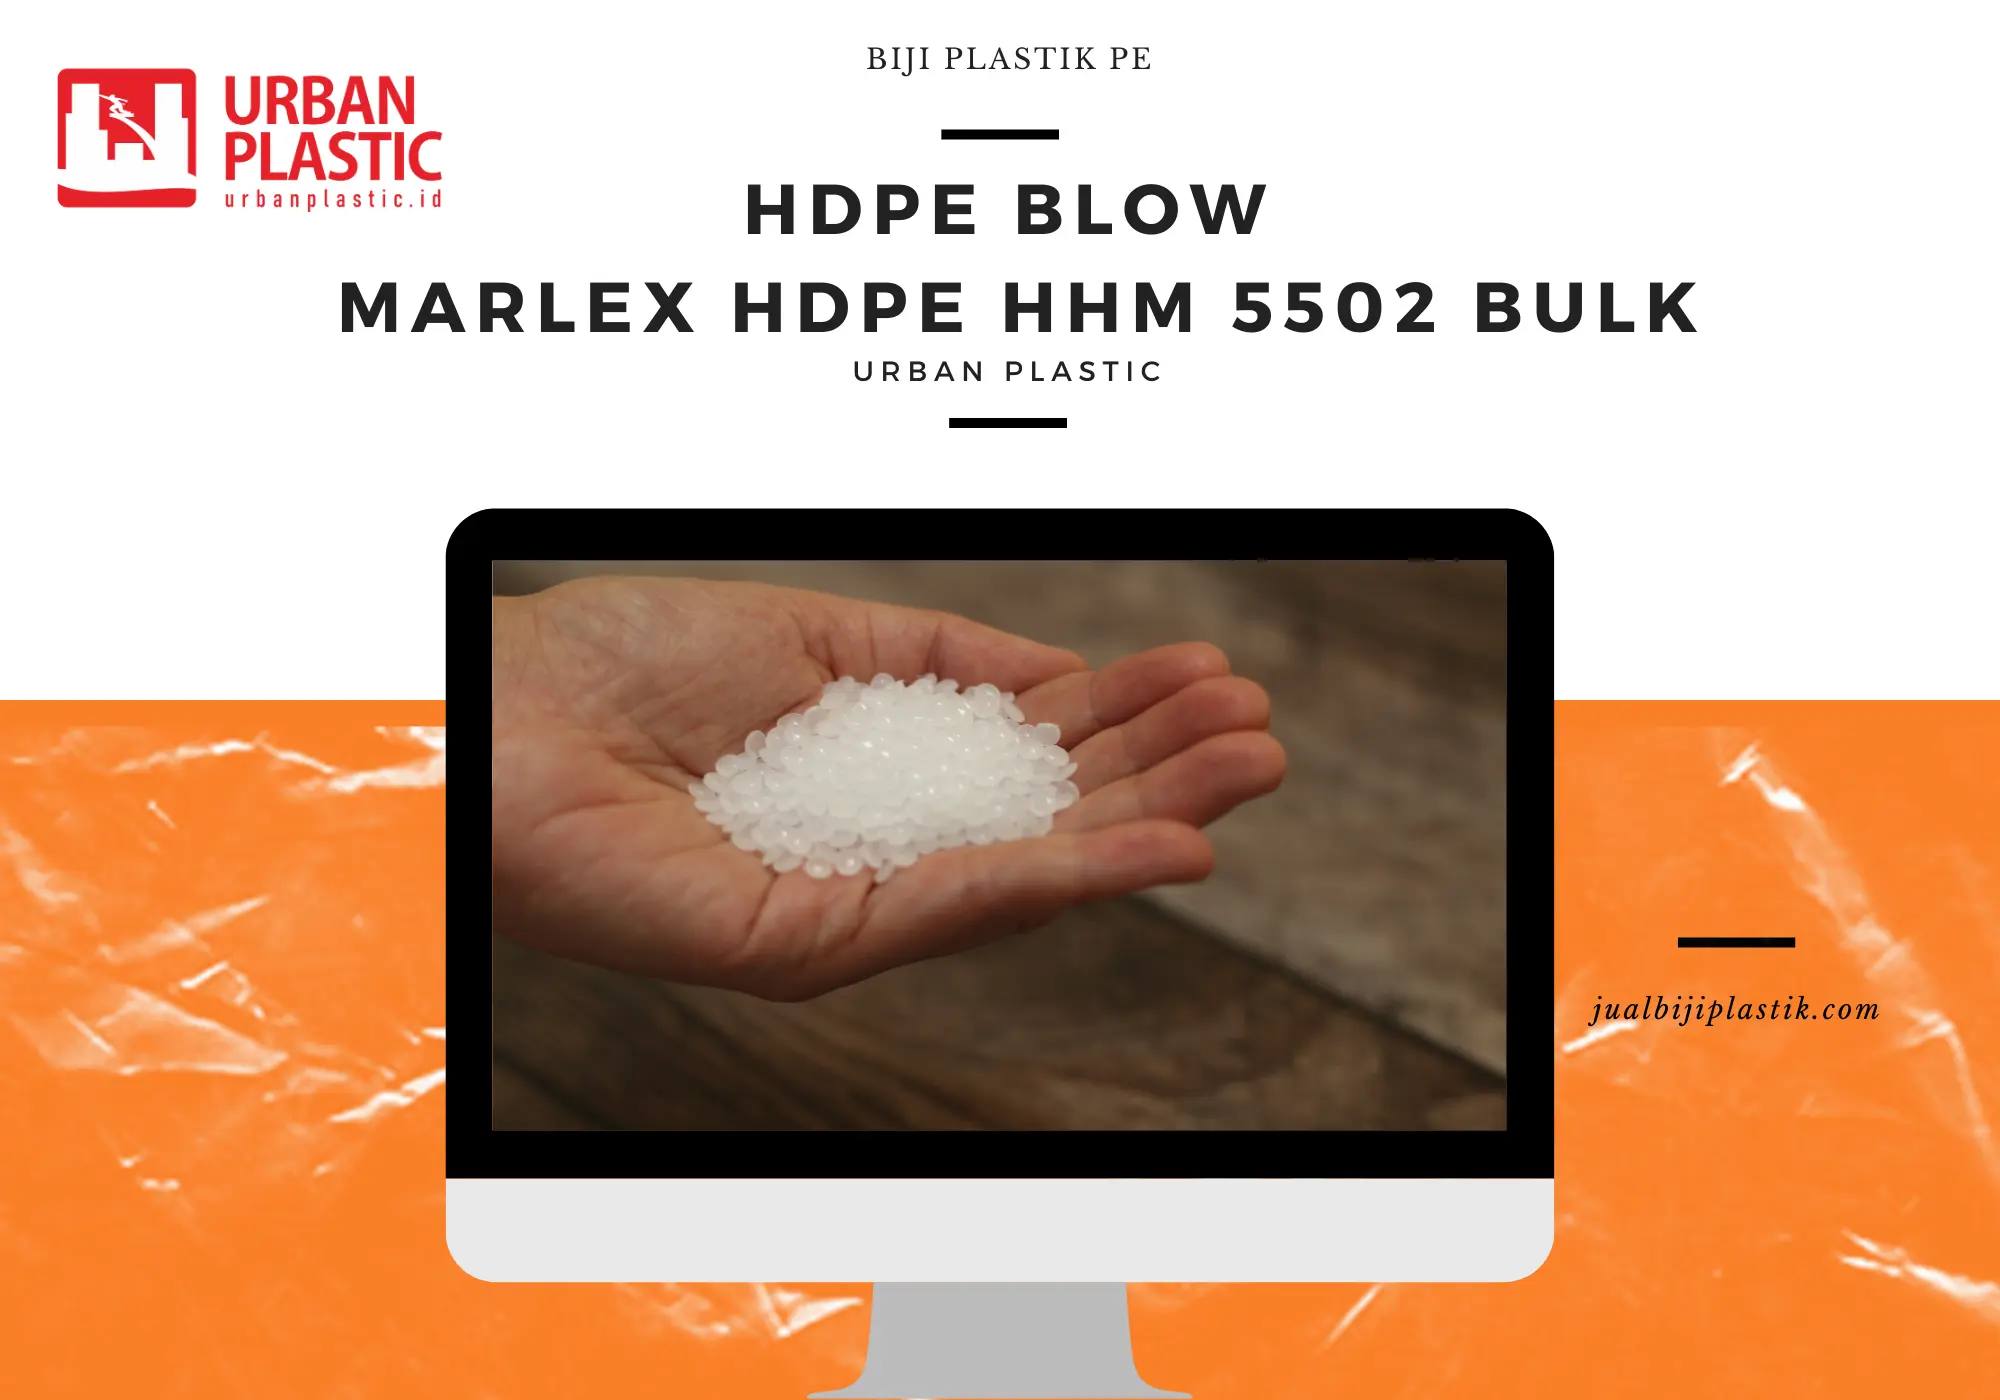 MARLEX HDPE HHM 5502 BULK